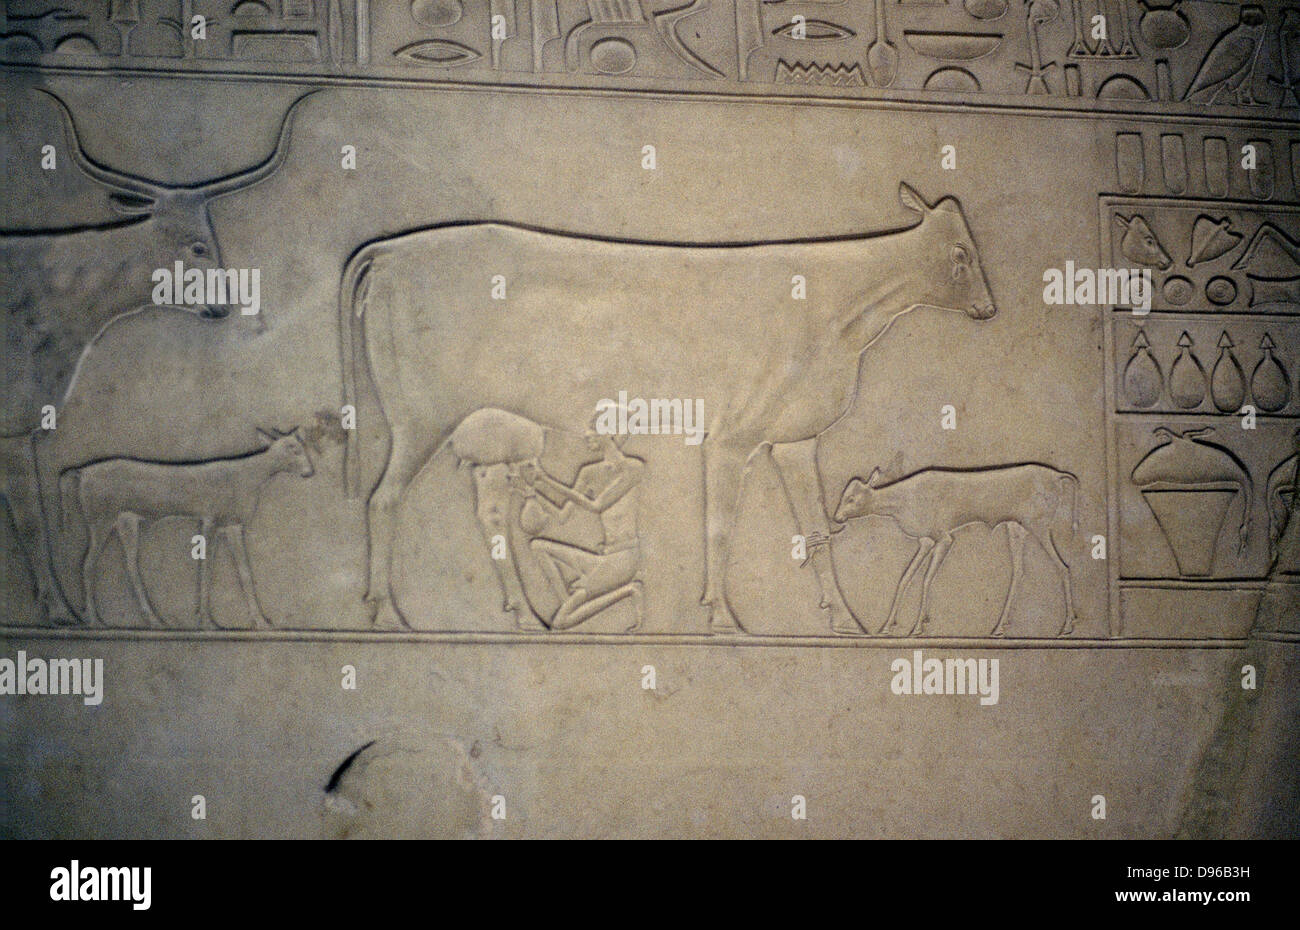 Mucca è munto. Il suo vitello è legata alla sua gamba. Vitello dietro di lei appartiene a un'altra vacca. Dettaglio dal Regno di Mezzo (c2040-1786 BC) sarcofago Foto Stock